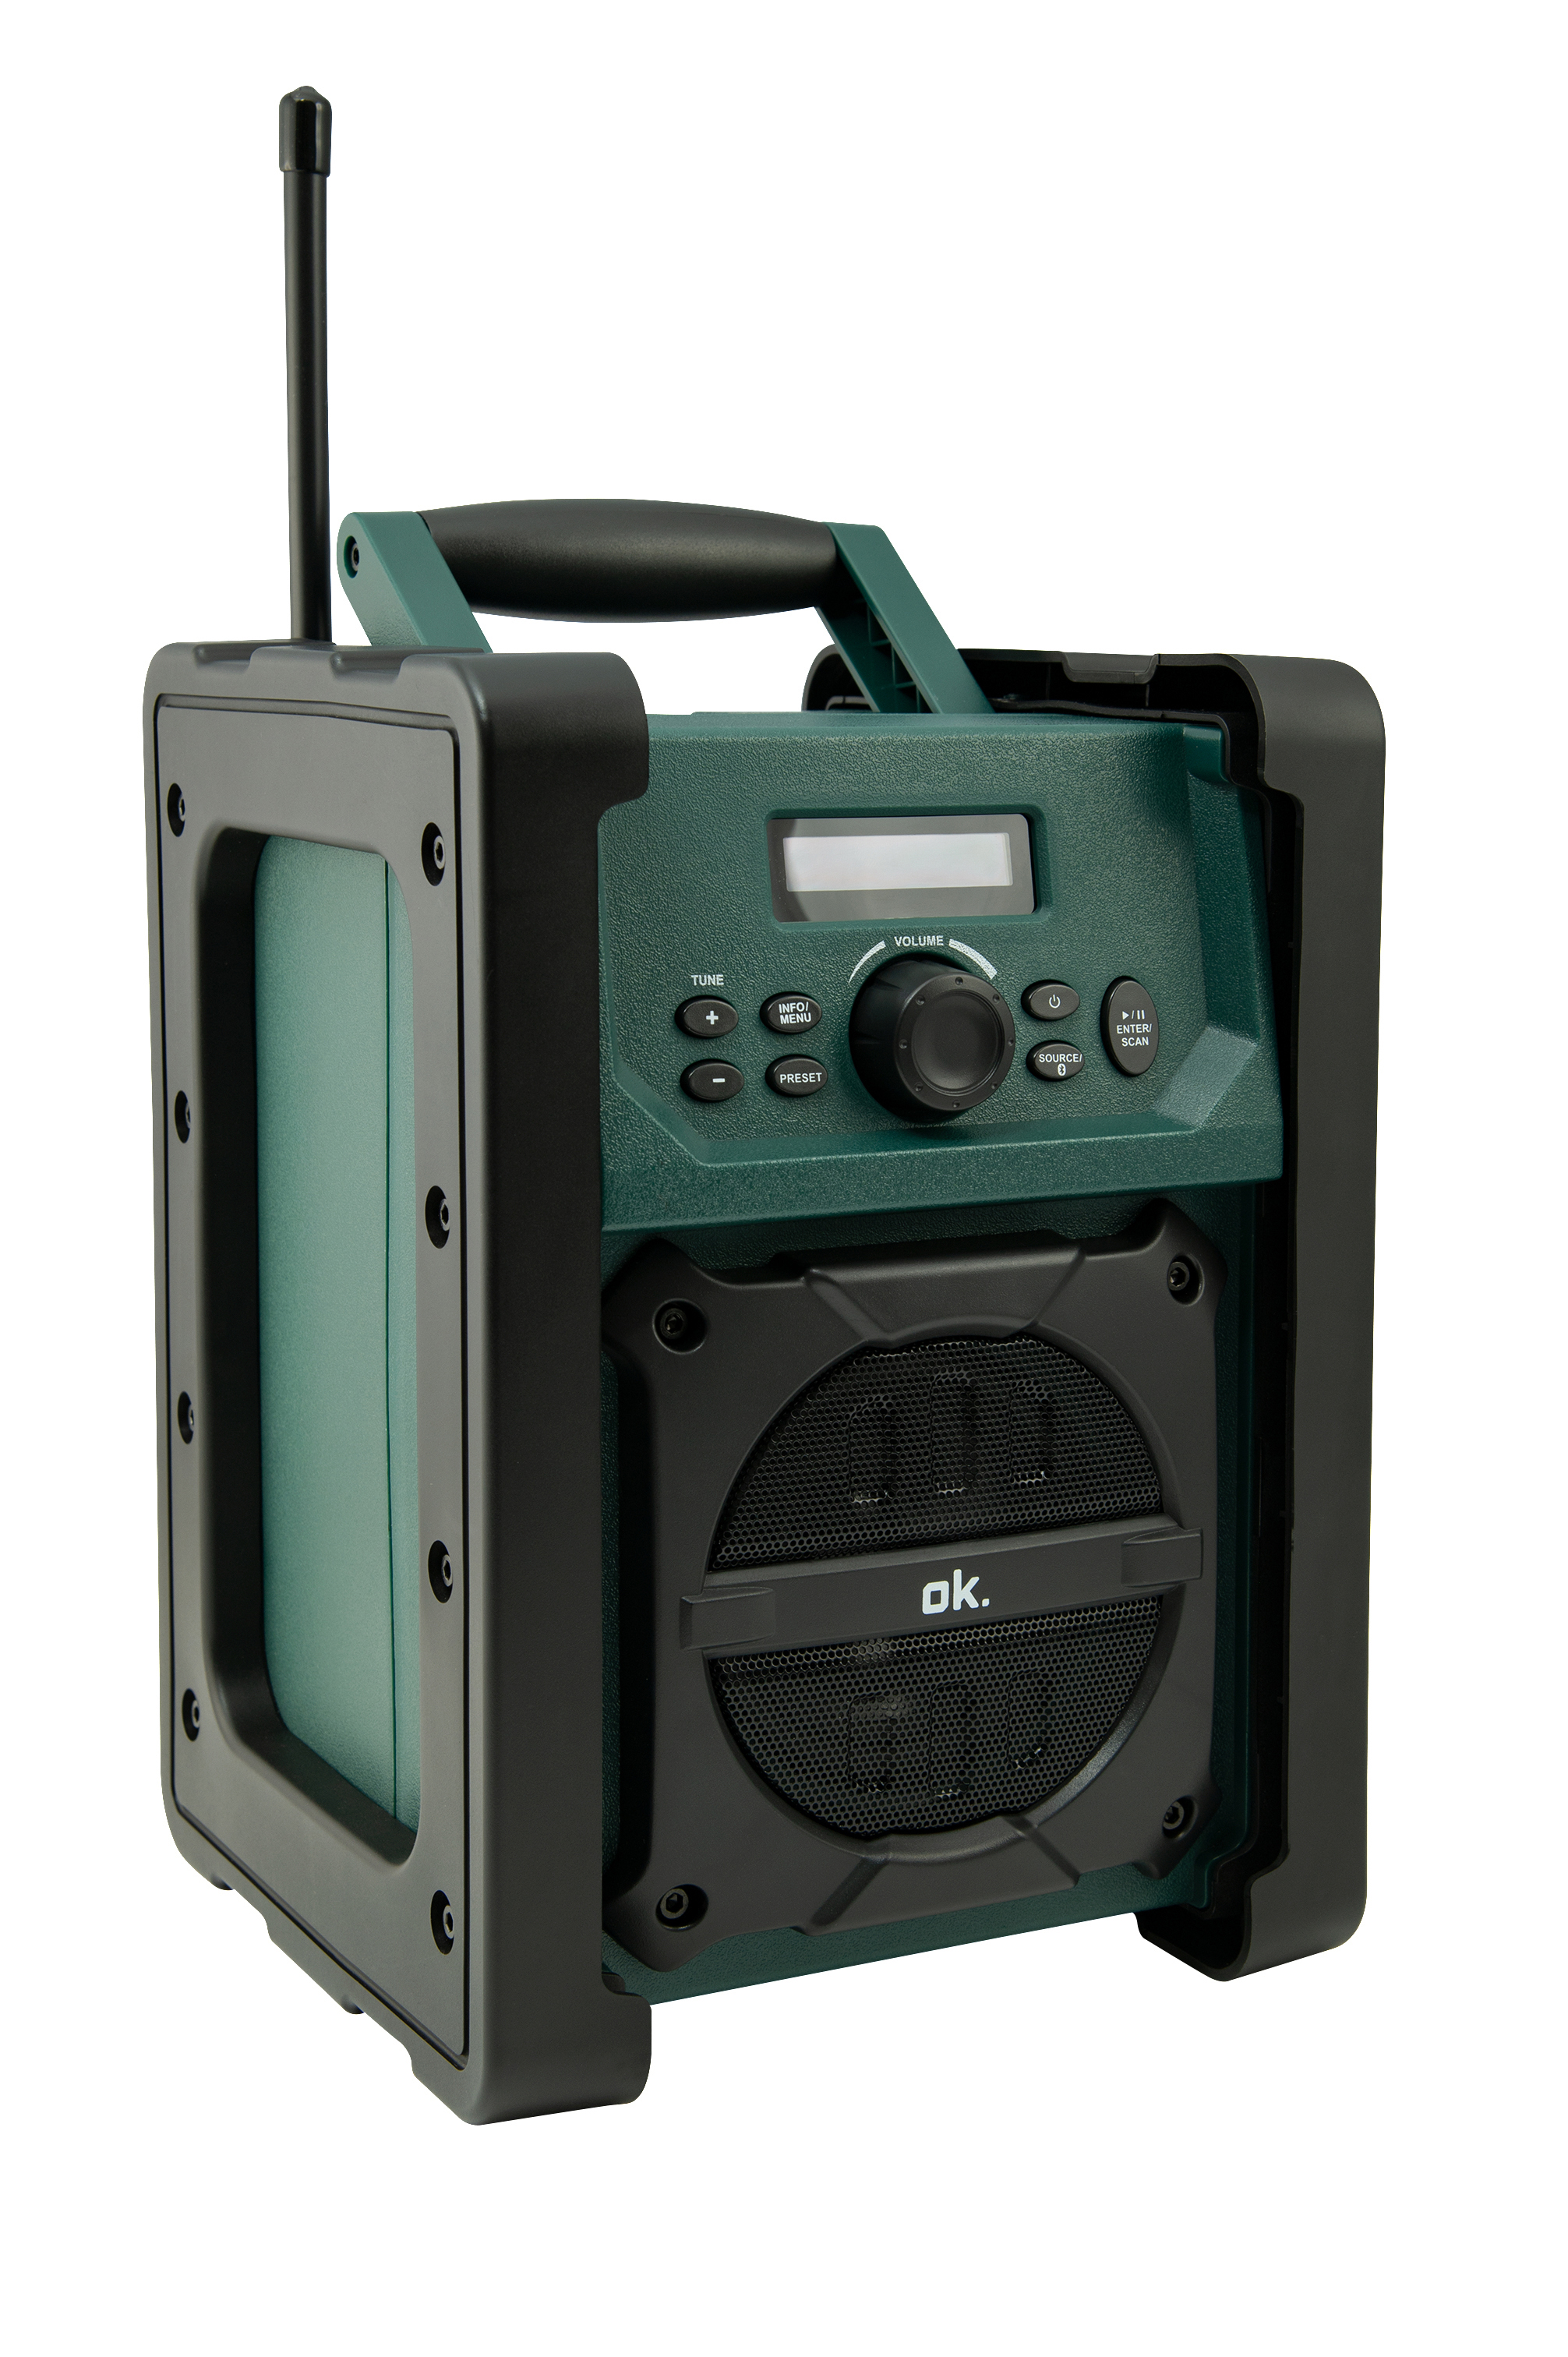 Tuner-DAB, Bluetooth, Schwarz/Grün Radio, Tuner-FM, DAB+ FM, ORD 300 OK. DAB+,